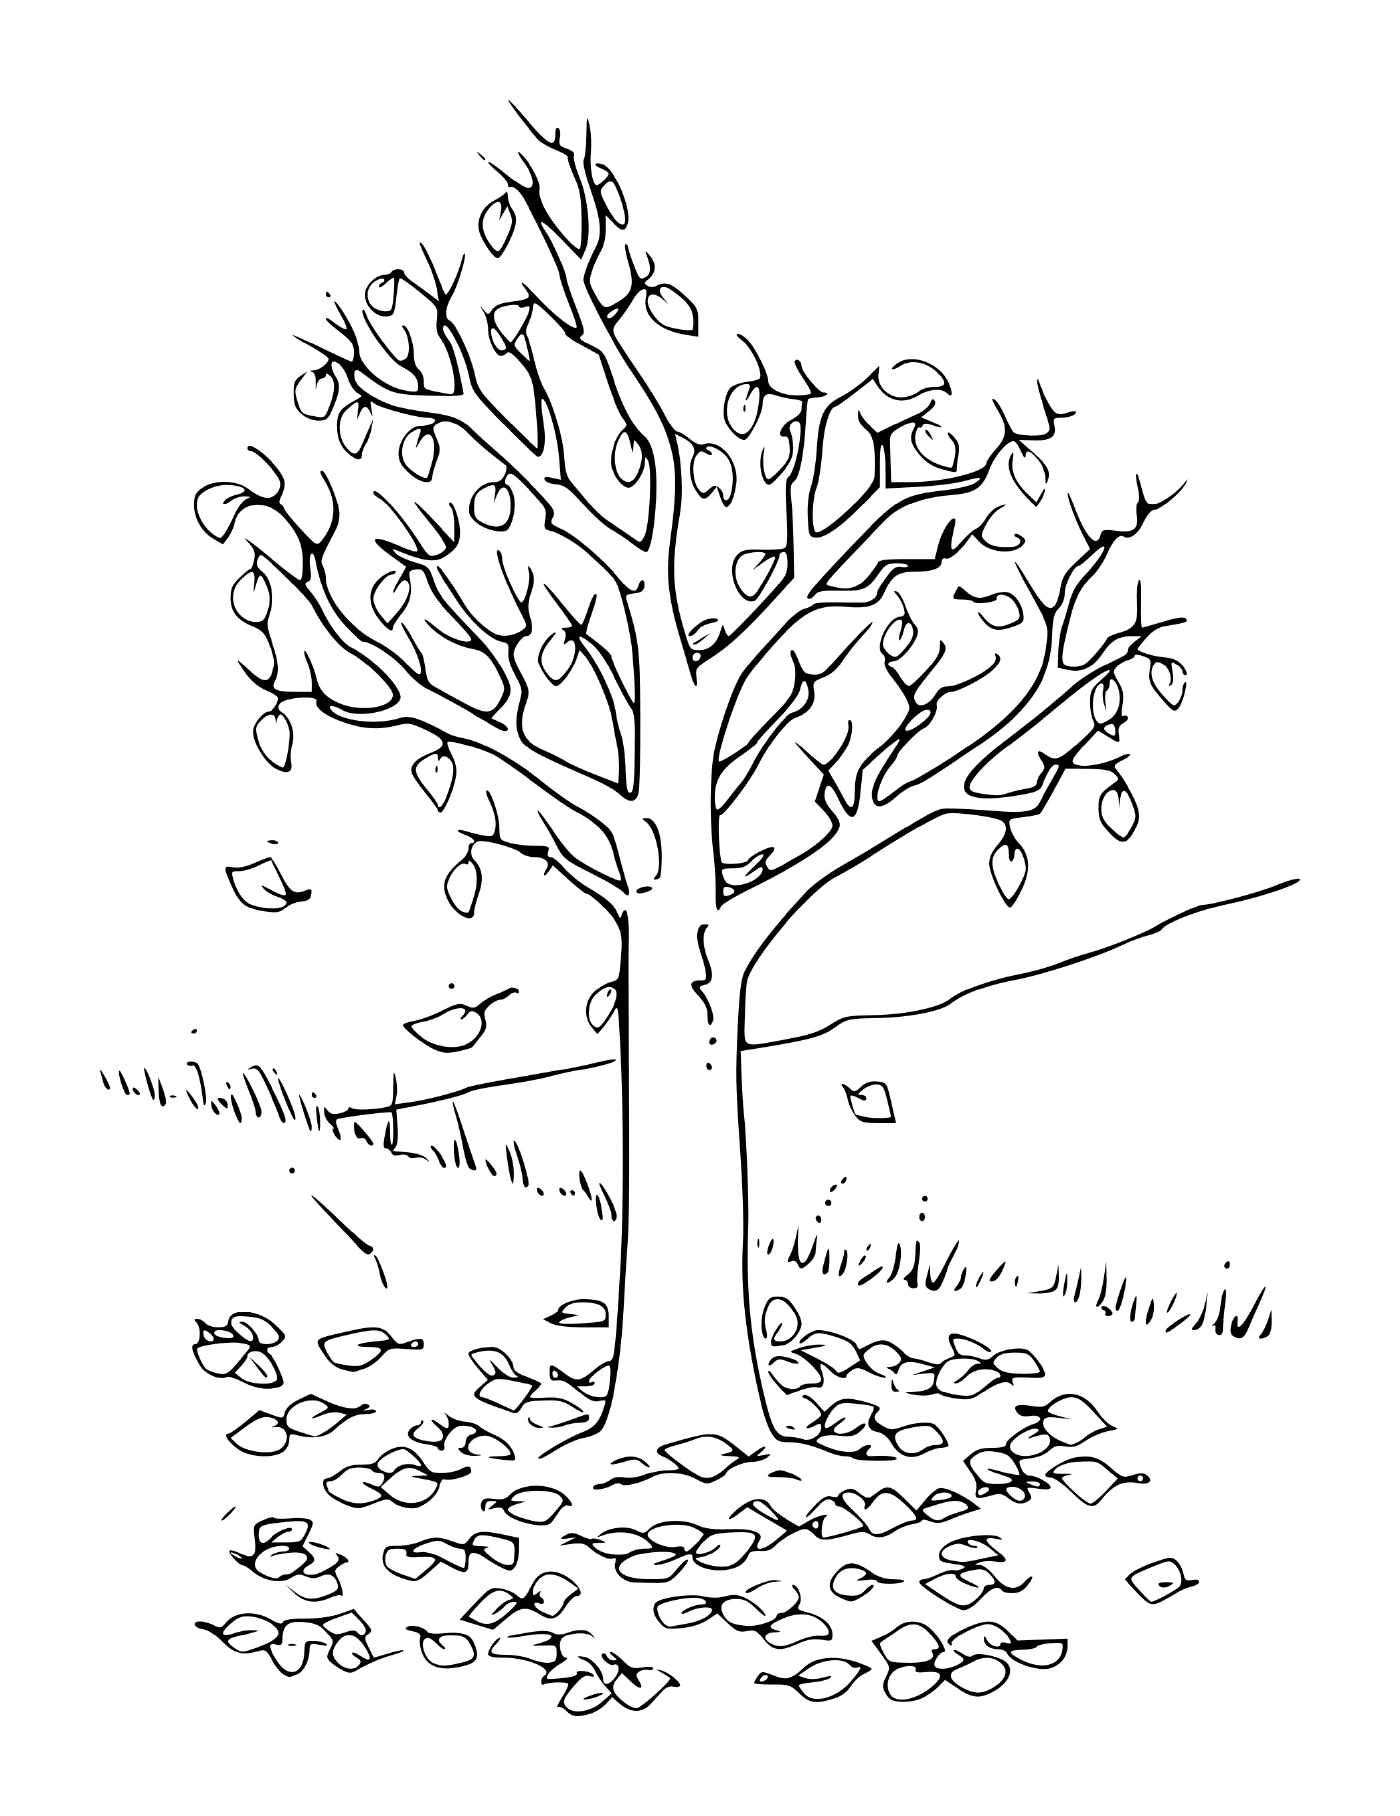   Un arbre avec des feuilles 